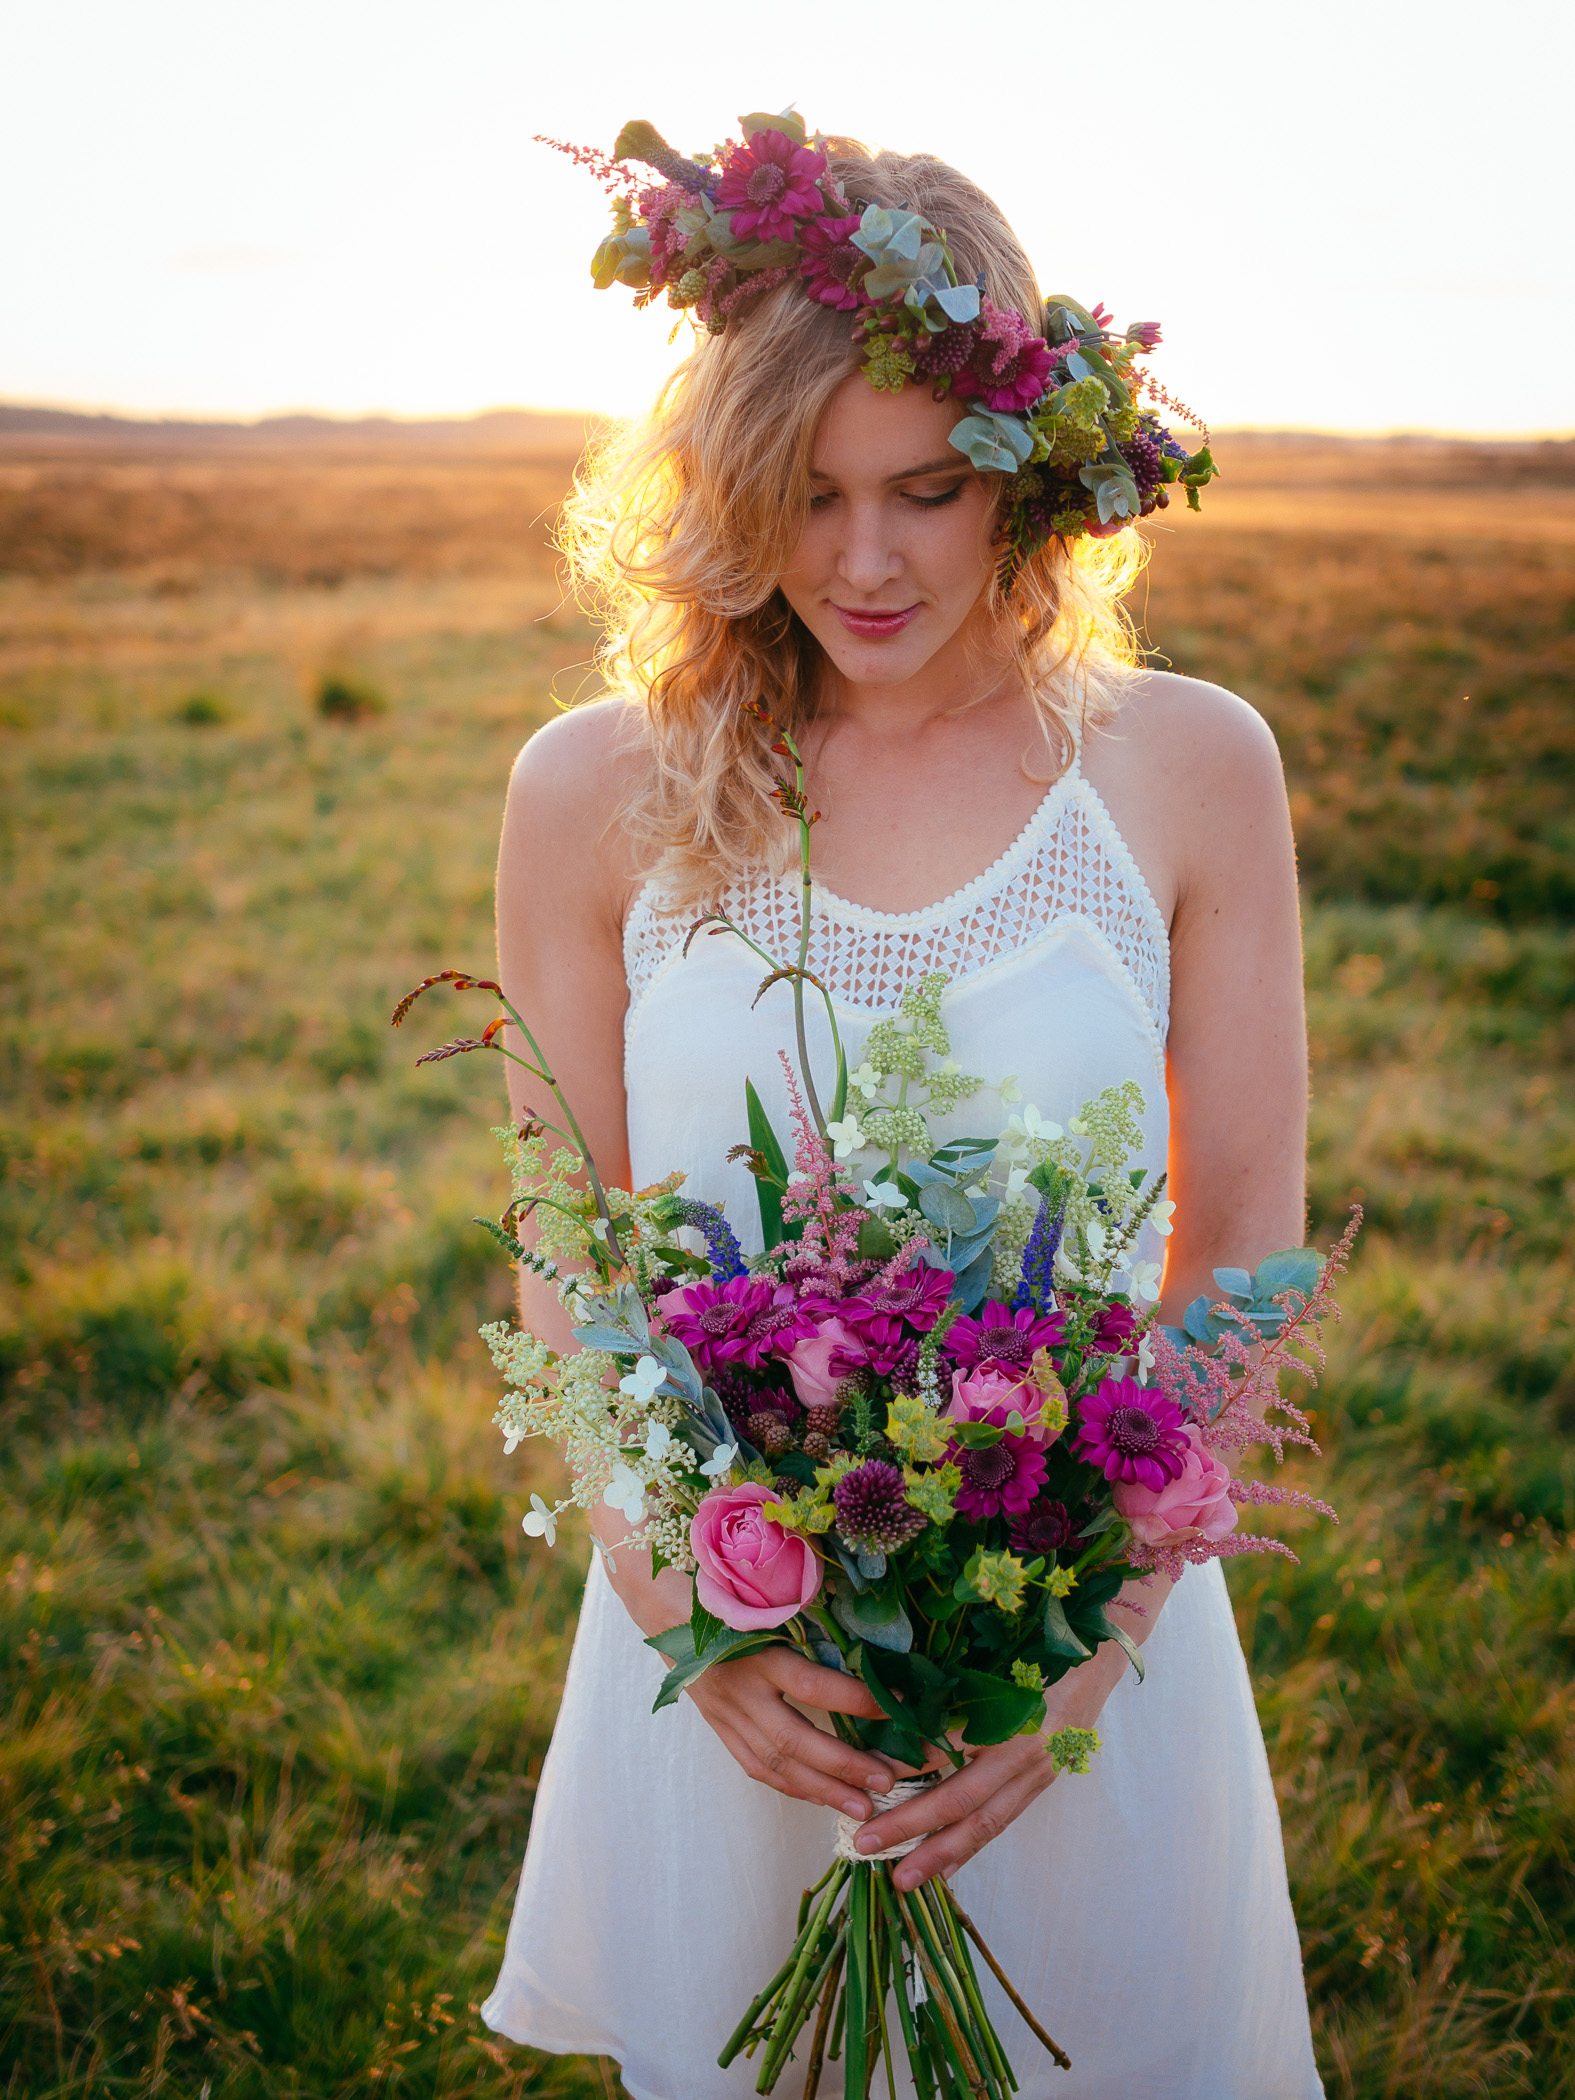 Maak avondeten menigte Kaliber Kleuren van je bruidsboeket — Bloemenmeisjes.com